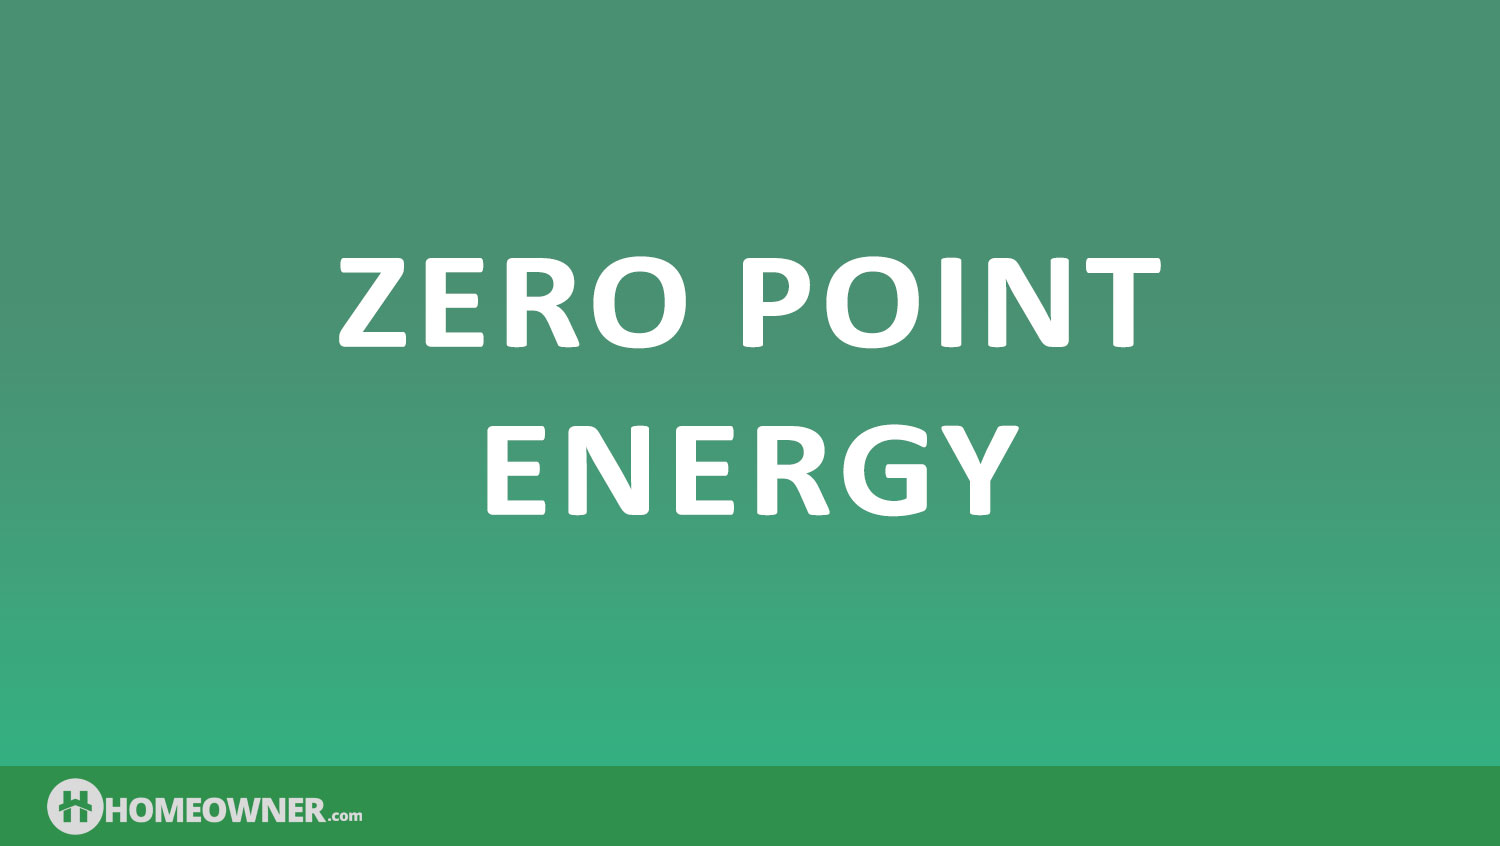 What Is Zero Point Energy?